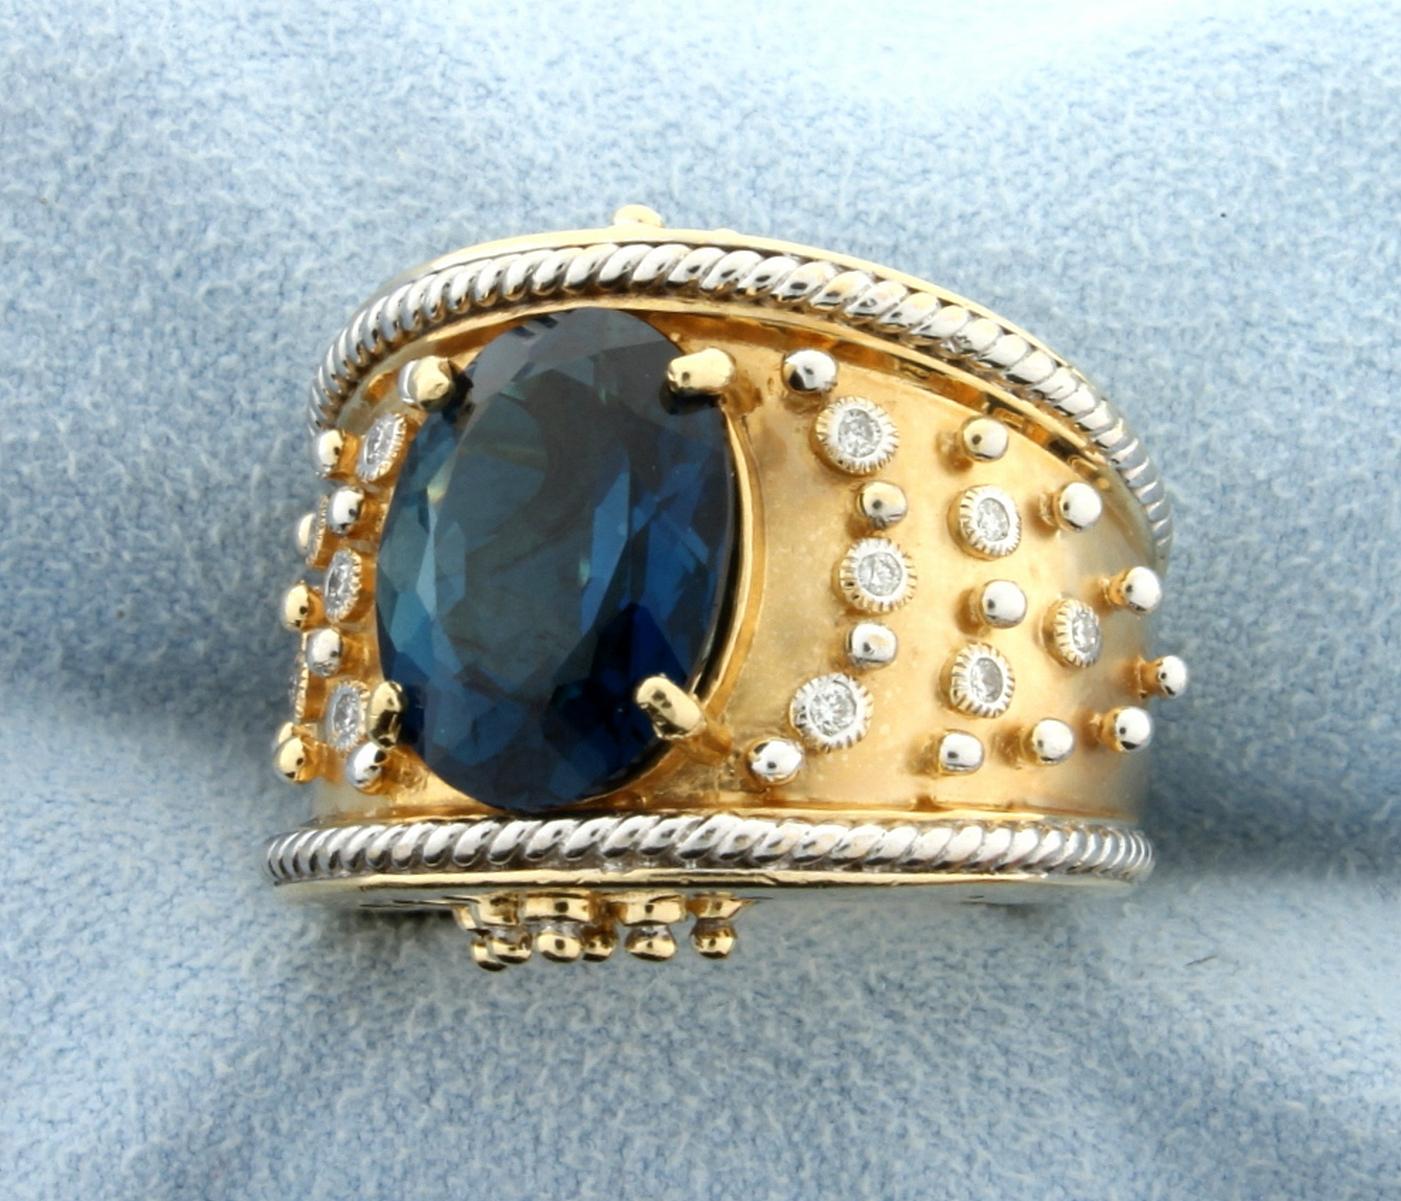 Designer Dallas Prince London Blue Topaz And Diamond Ring In 14k Gold